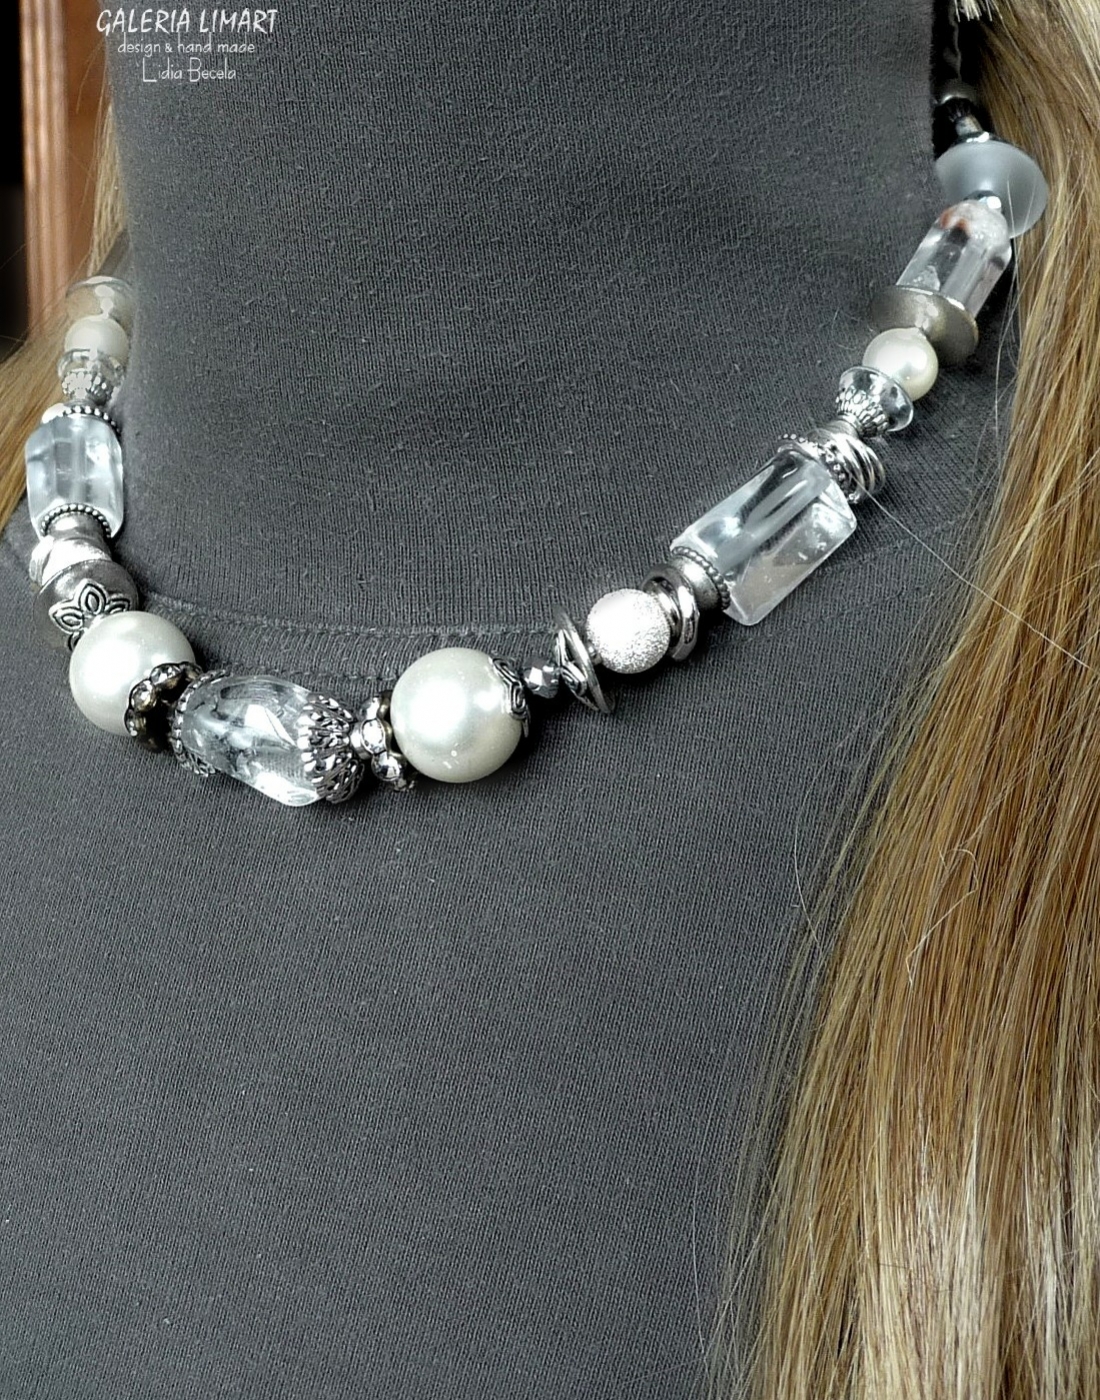 Naszyjnik i bransoletka z mixu kryształu górskiego, szklanych pereł, kryształów i elementów ozdobnych typu bali w kolorze srebrnym